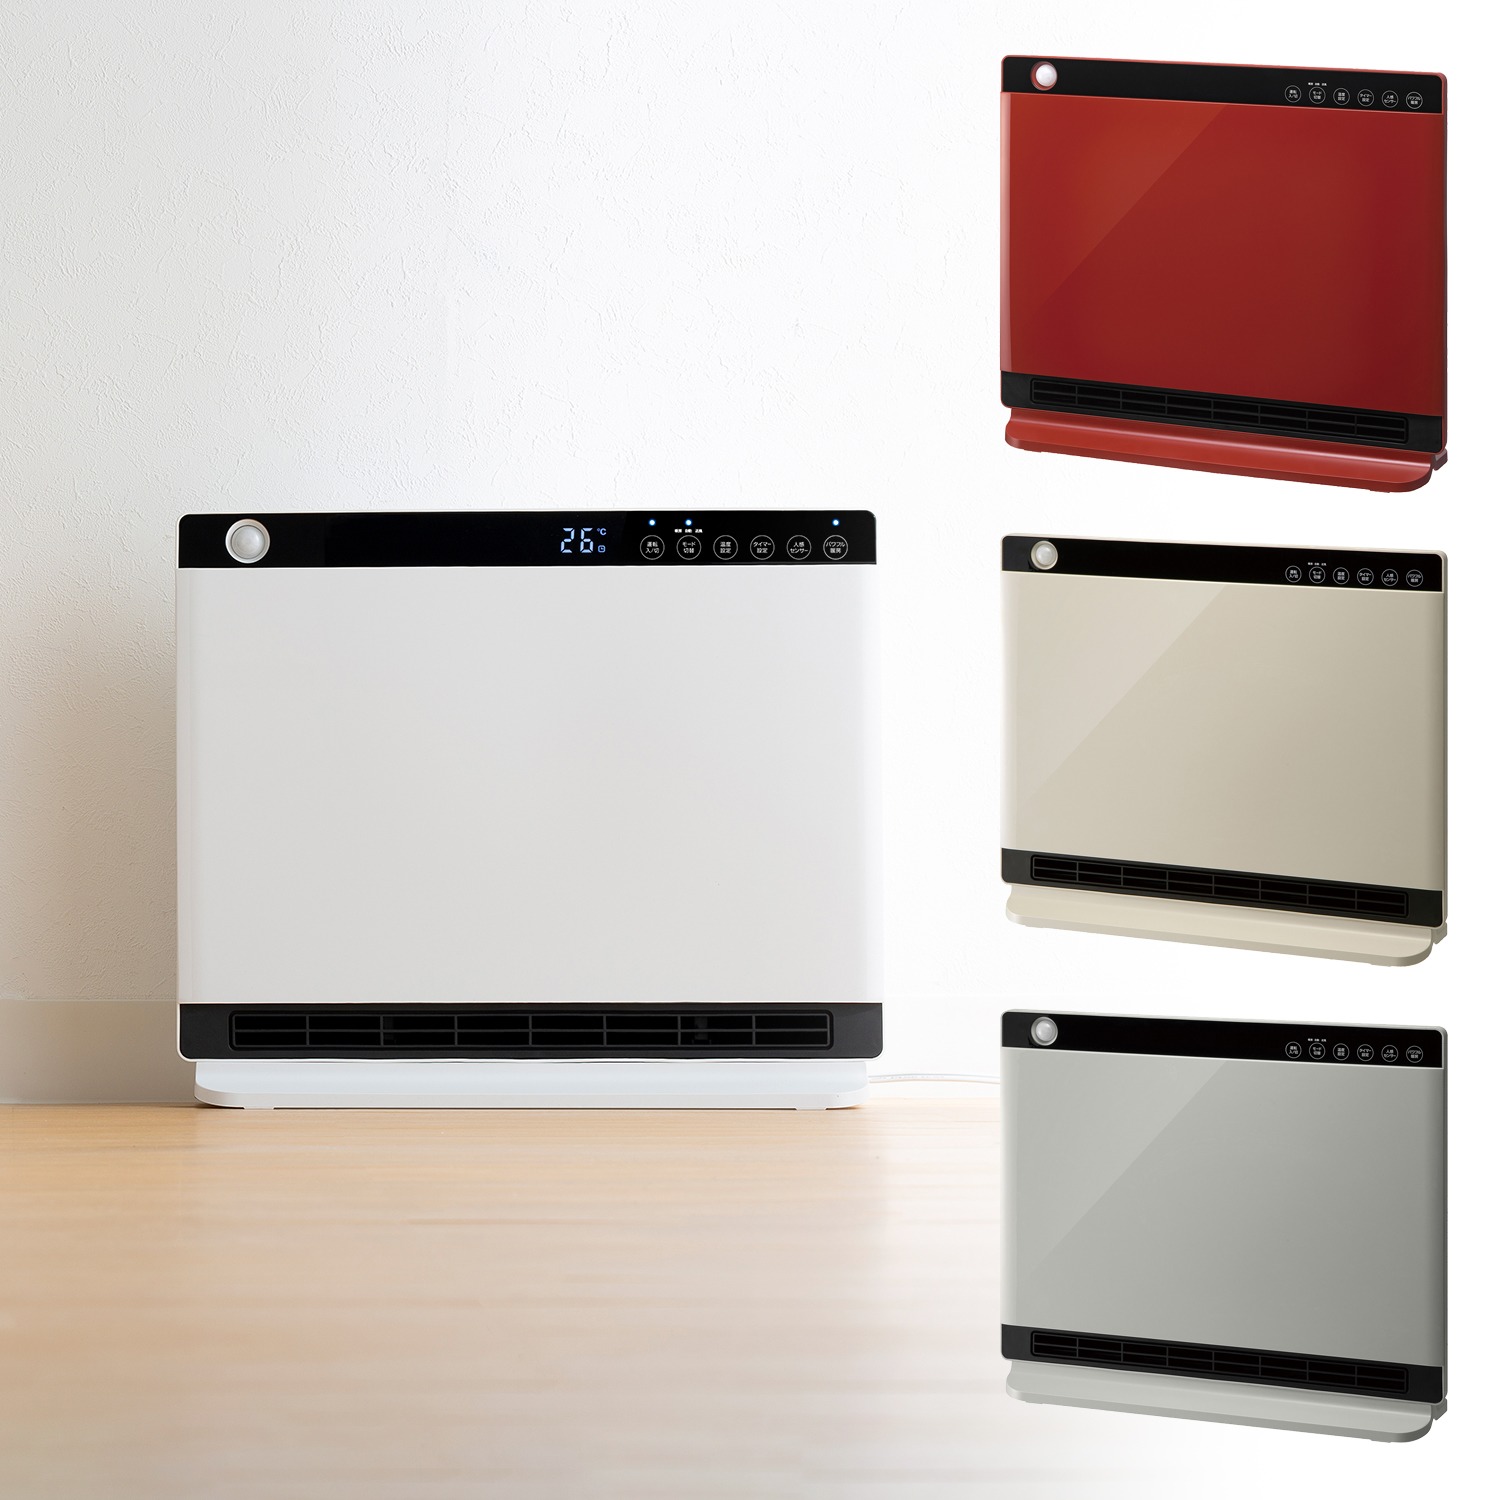 冷暖房/空調 電気ヒーター スリーアップ 人感・室温センサー付 大風量 パネルセラミックヒーター 